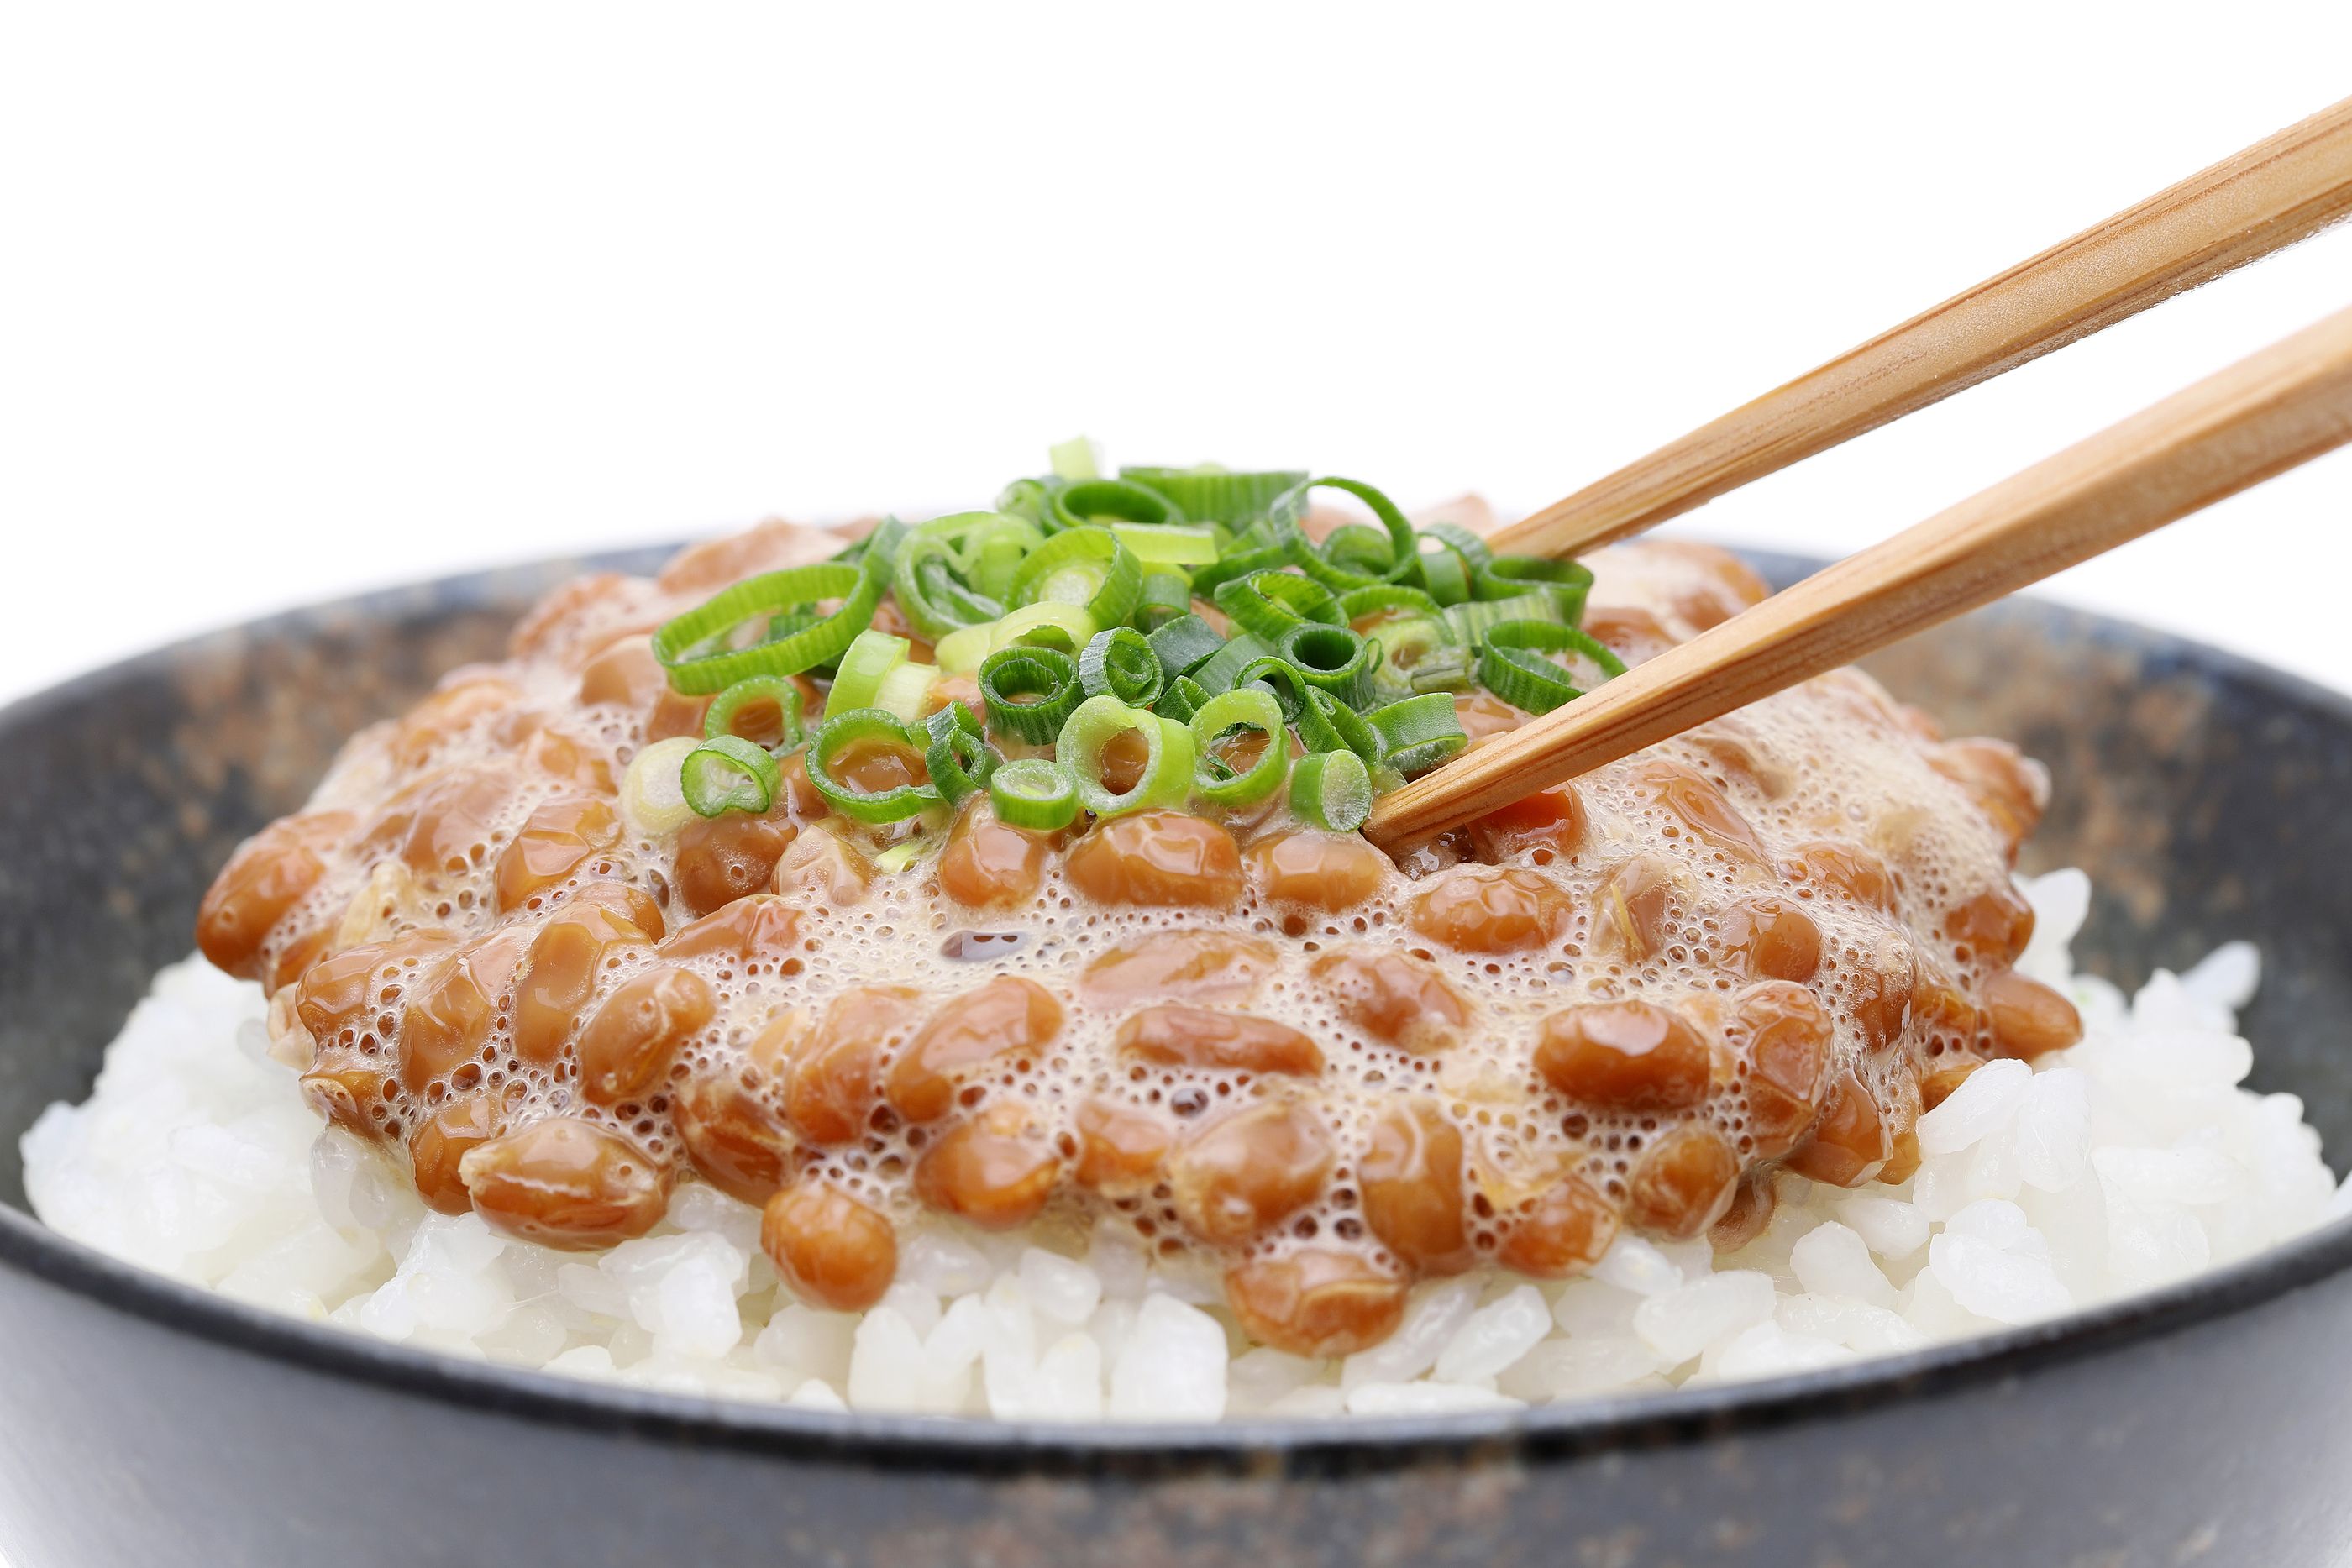 El alimento que comen los japoneses que reduce el estrés y alarga la vida